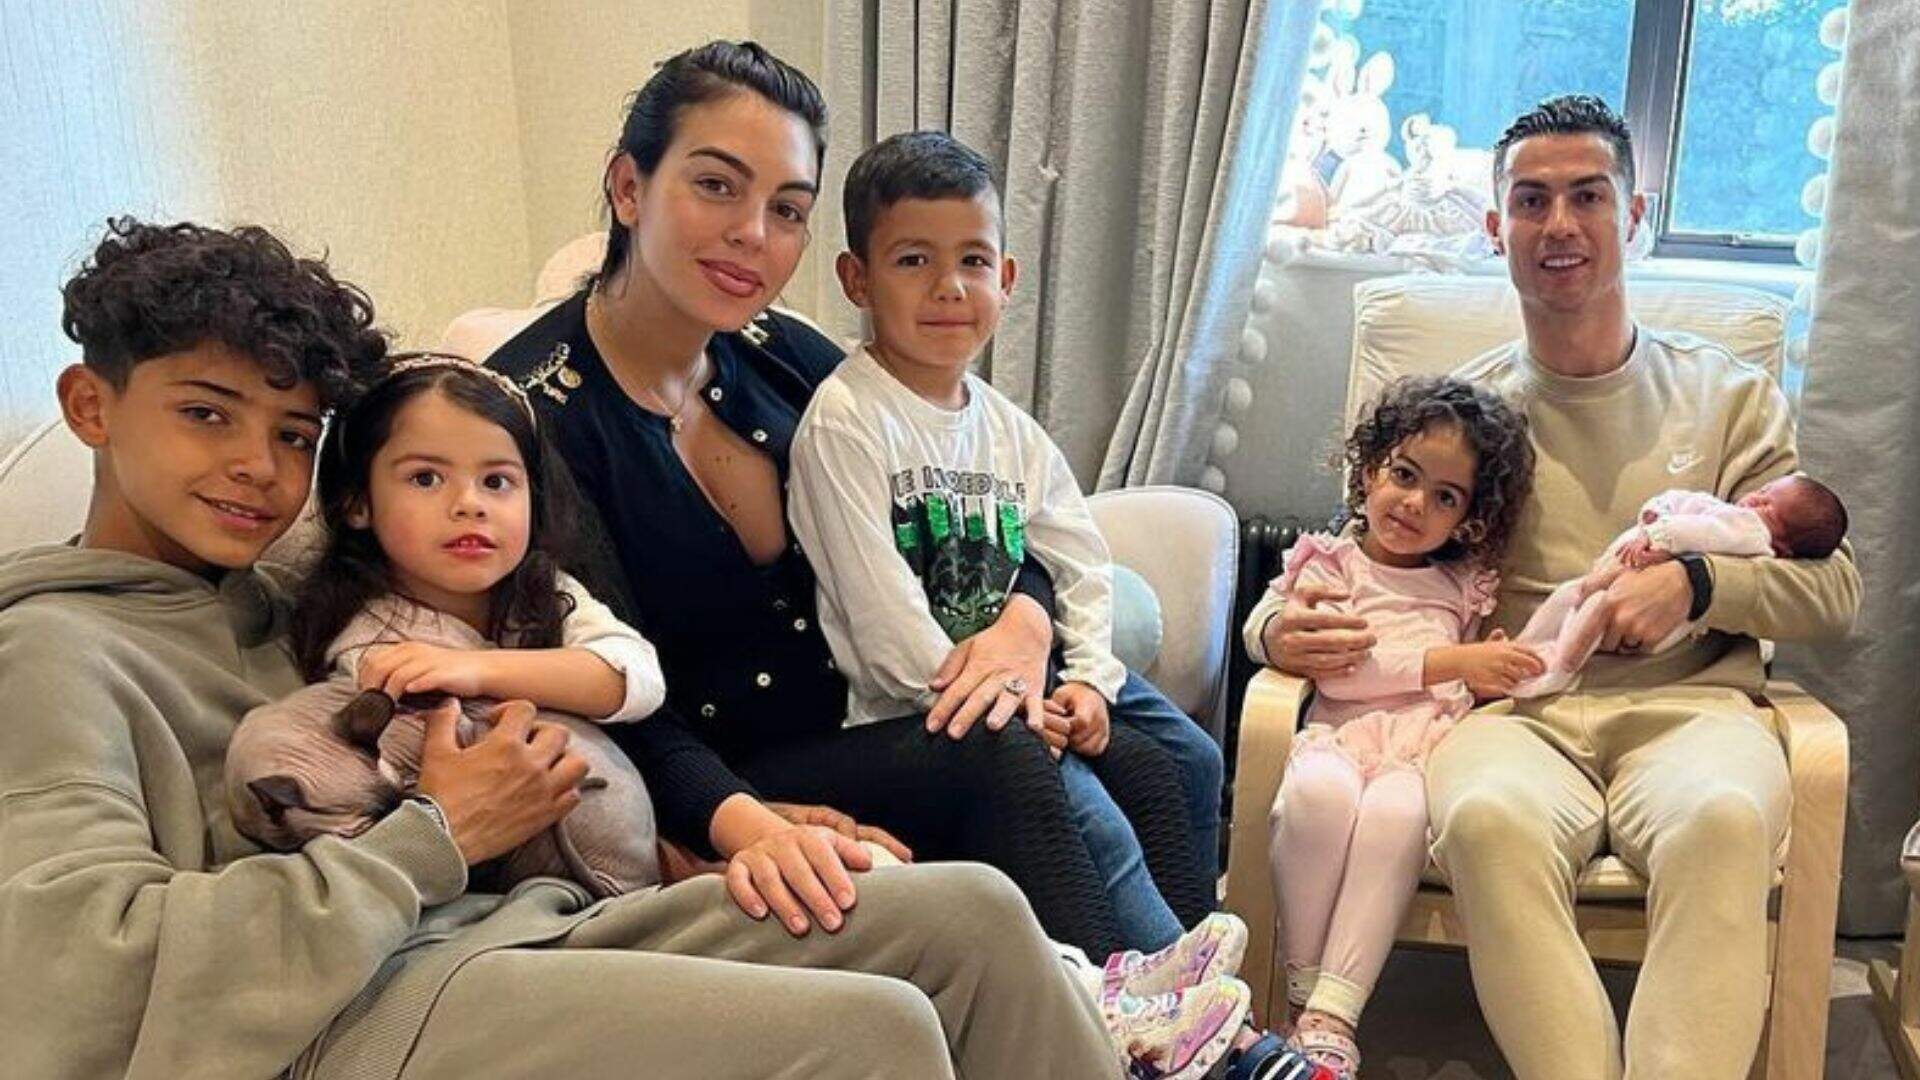 Cristiano Ronaldo relembra como foi contar aos filhos que perdeu um dos gêmeos: “Pior momento” - Metropolitana FM